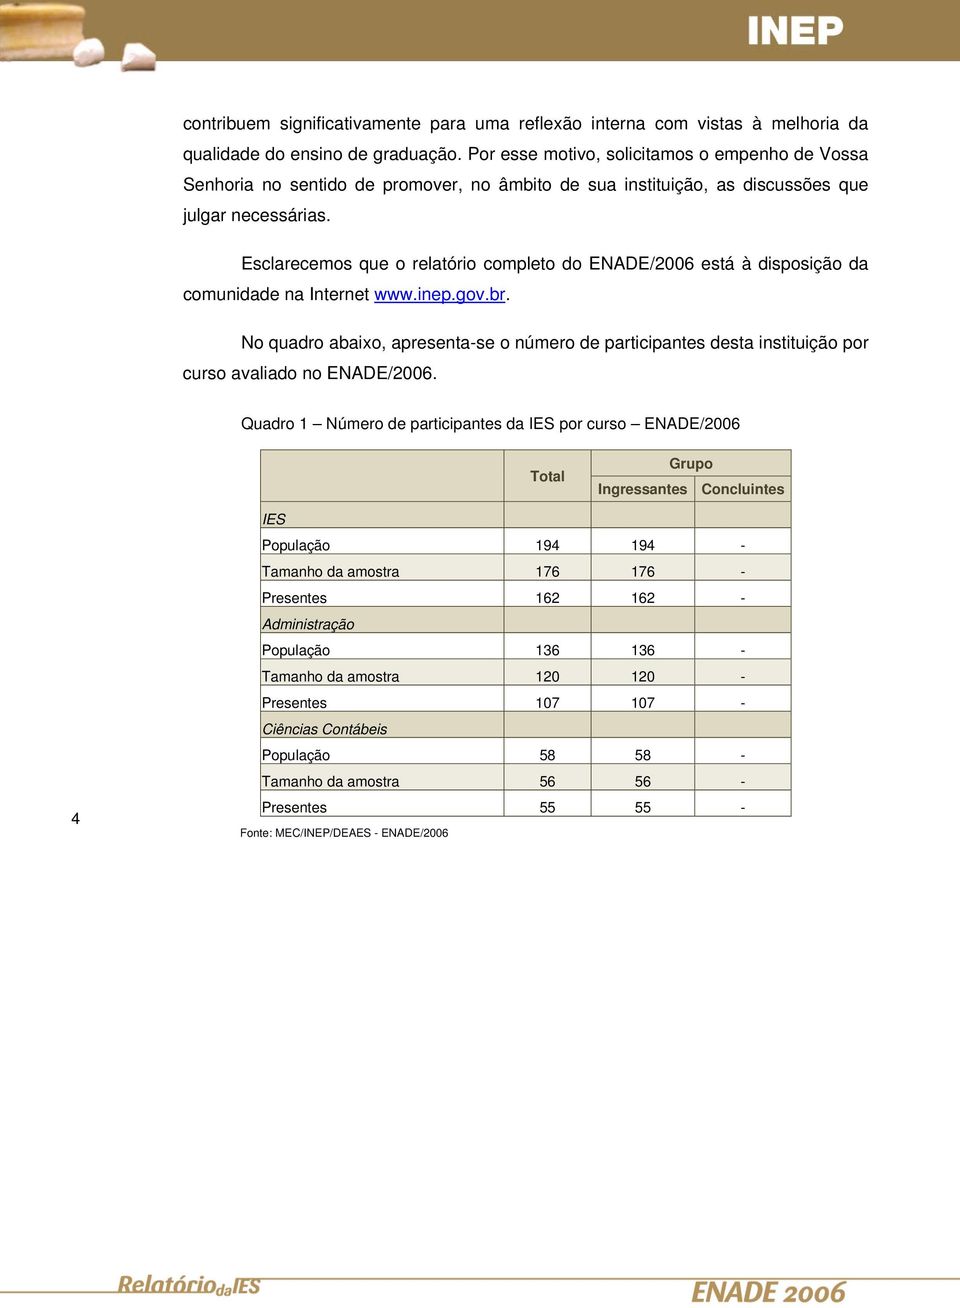 Esclarecemos que o relatório completo do ENADE/2006 está à disposição da comunidade na Internet www.inep.gov.br.